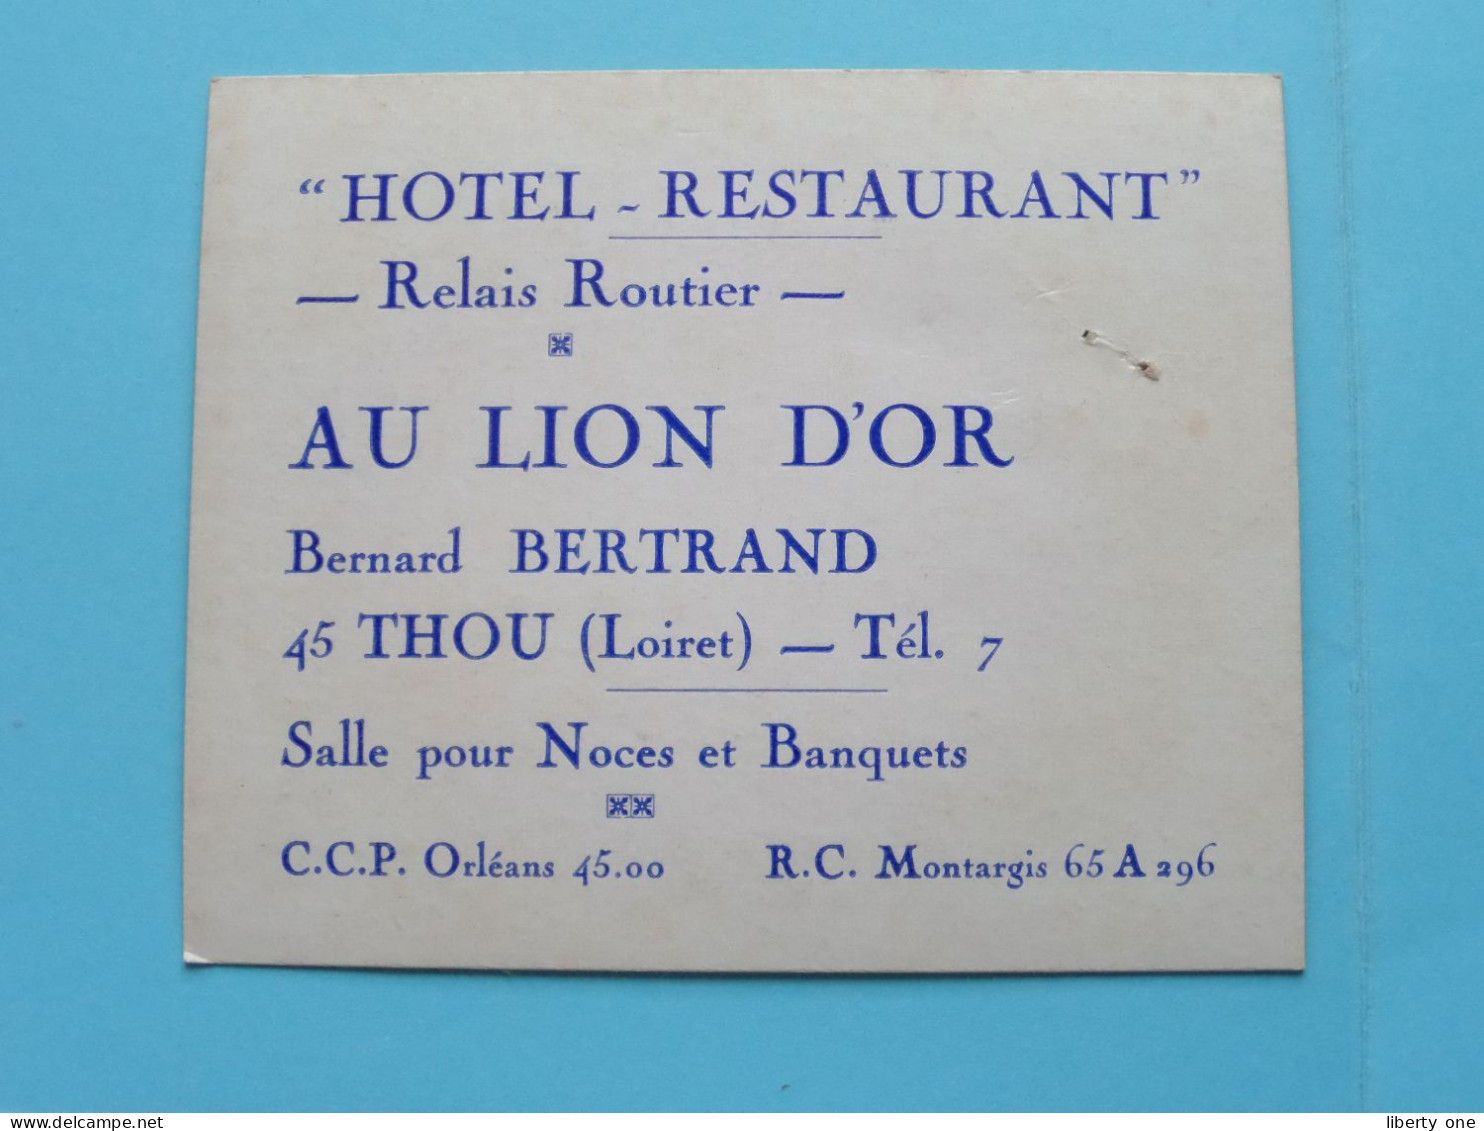 Hotel - Restaurant AU LION D'OR ( Bernard BERTRAND ) à THOU (Loiret) Tél 7 ( Zie / Voir SCANS ) CDV France ! - Cartoncini Da Visita